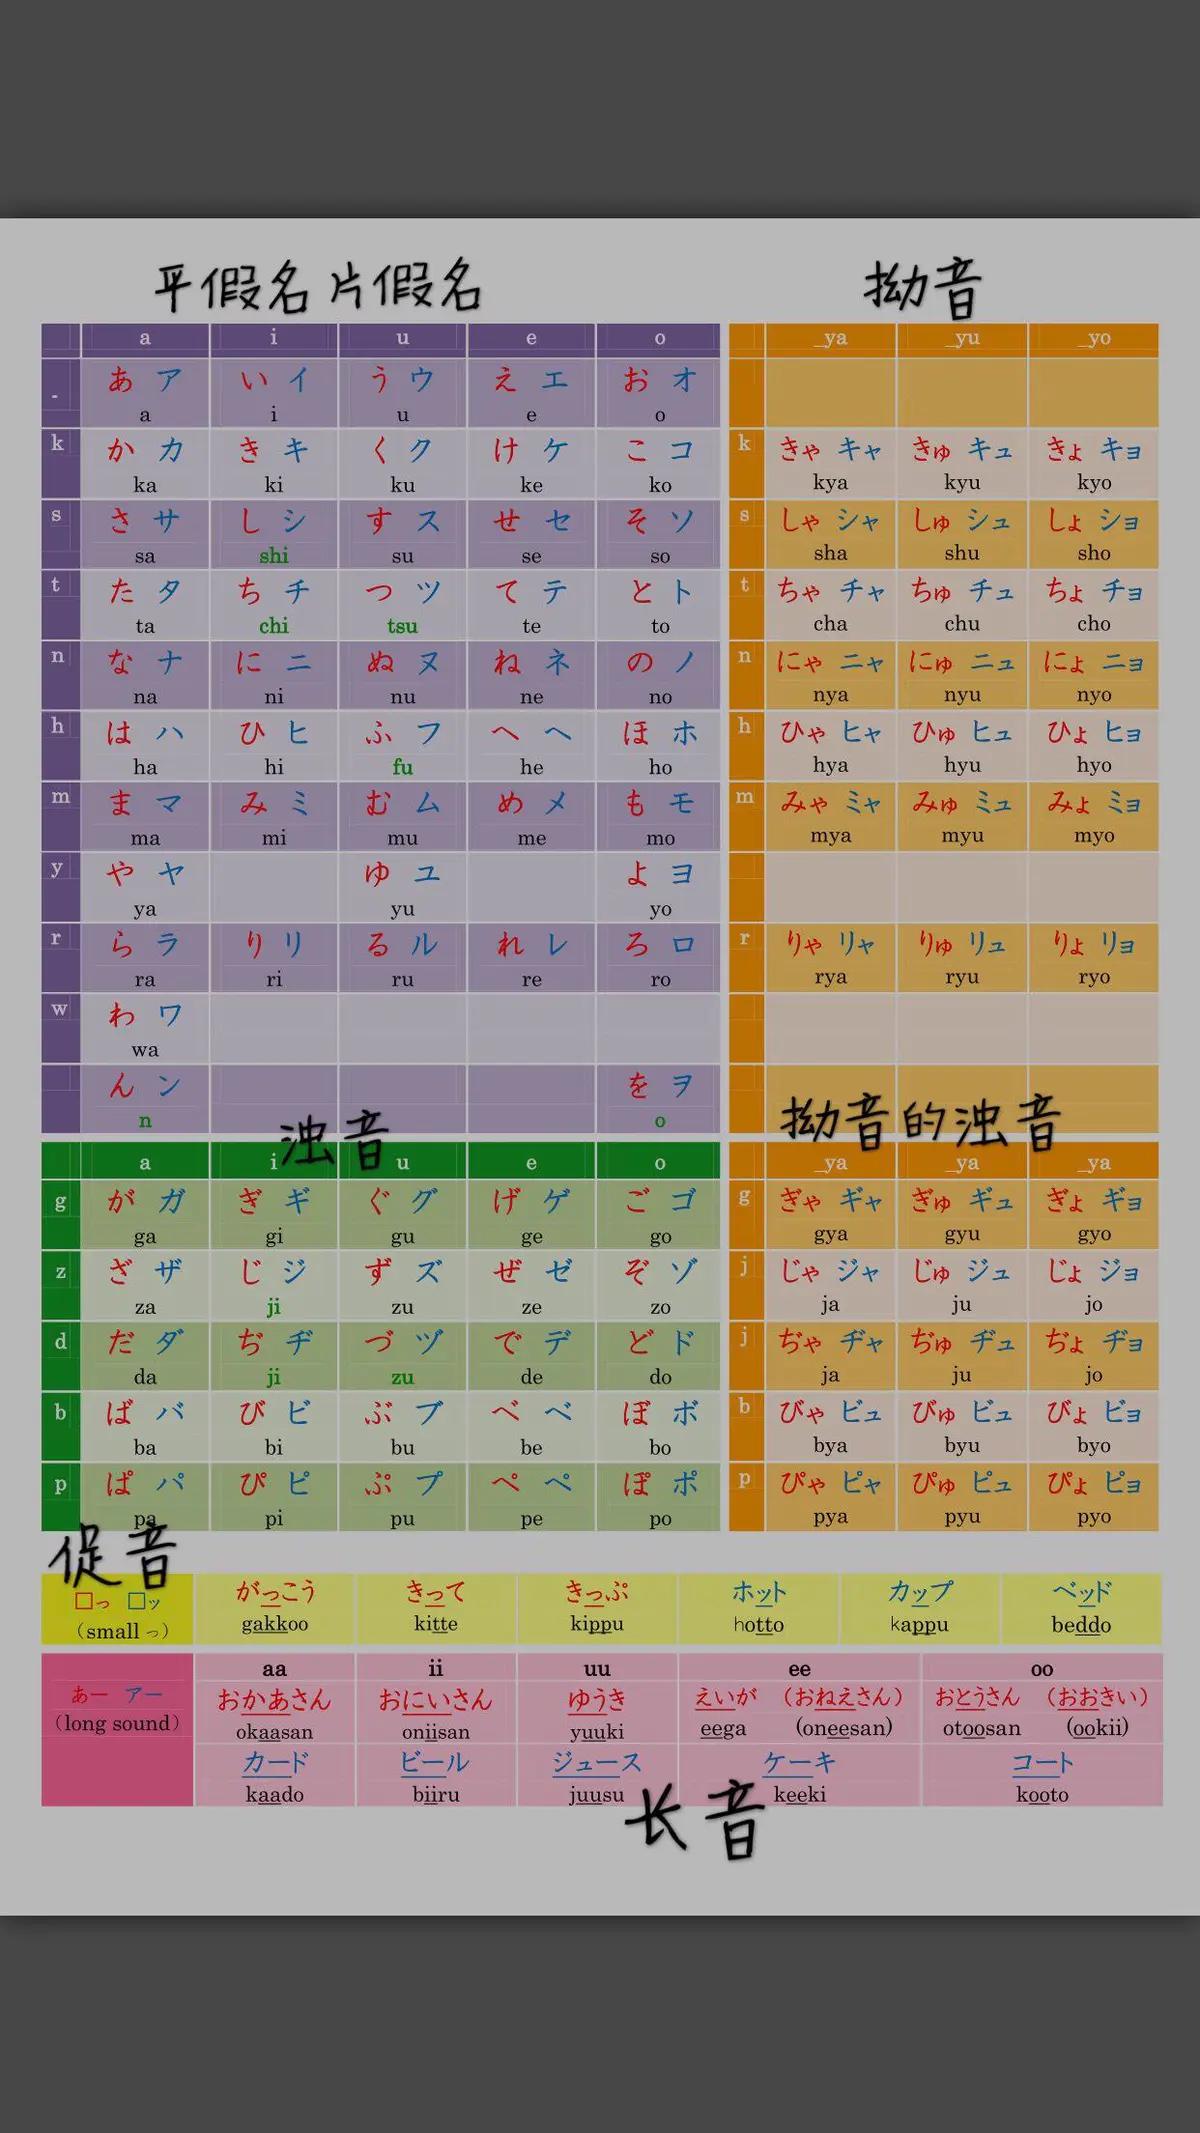 日语50音图全表浊音图片